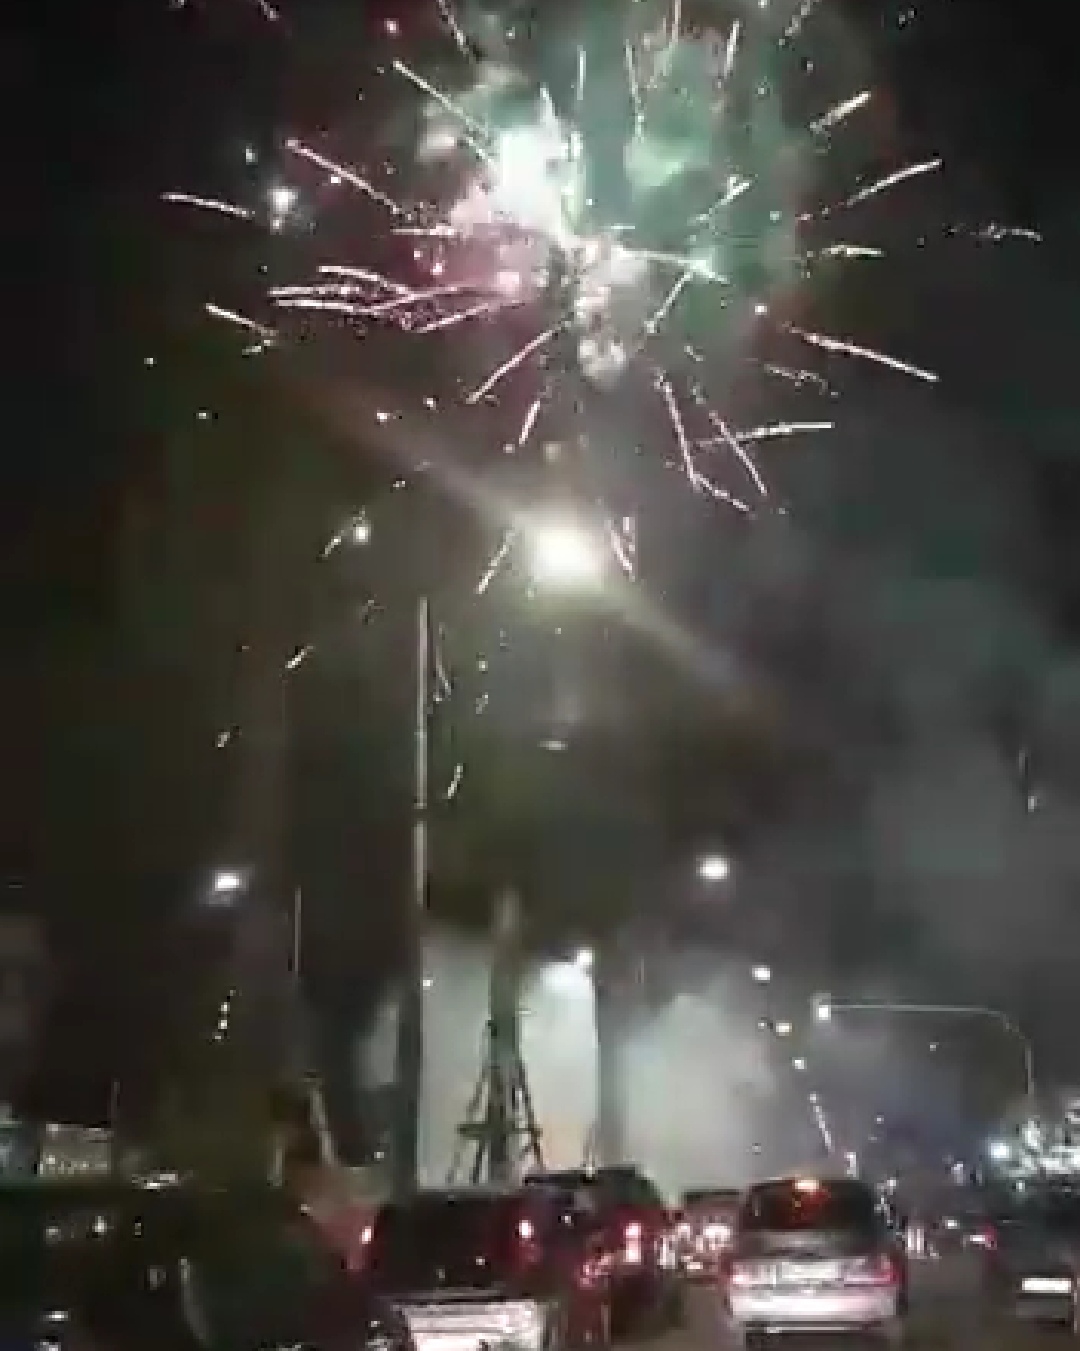 Fuochi d’artificio fuori controllo a Napoli, decine di segnalazioni: riposare di notte è diventata una lotteria